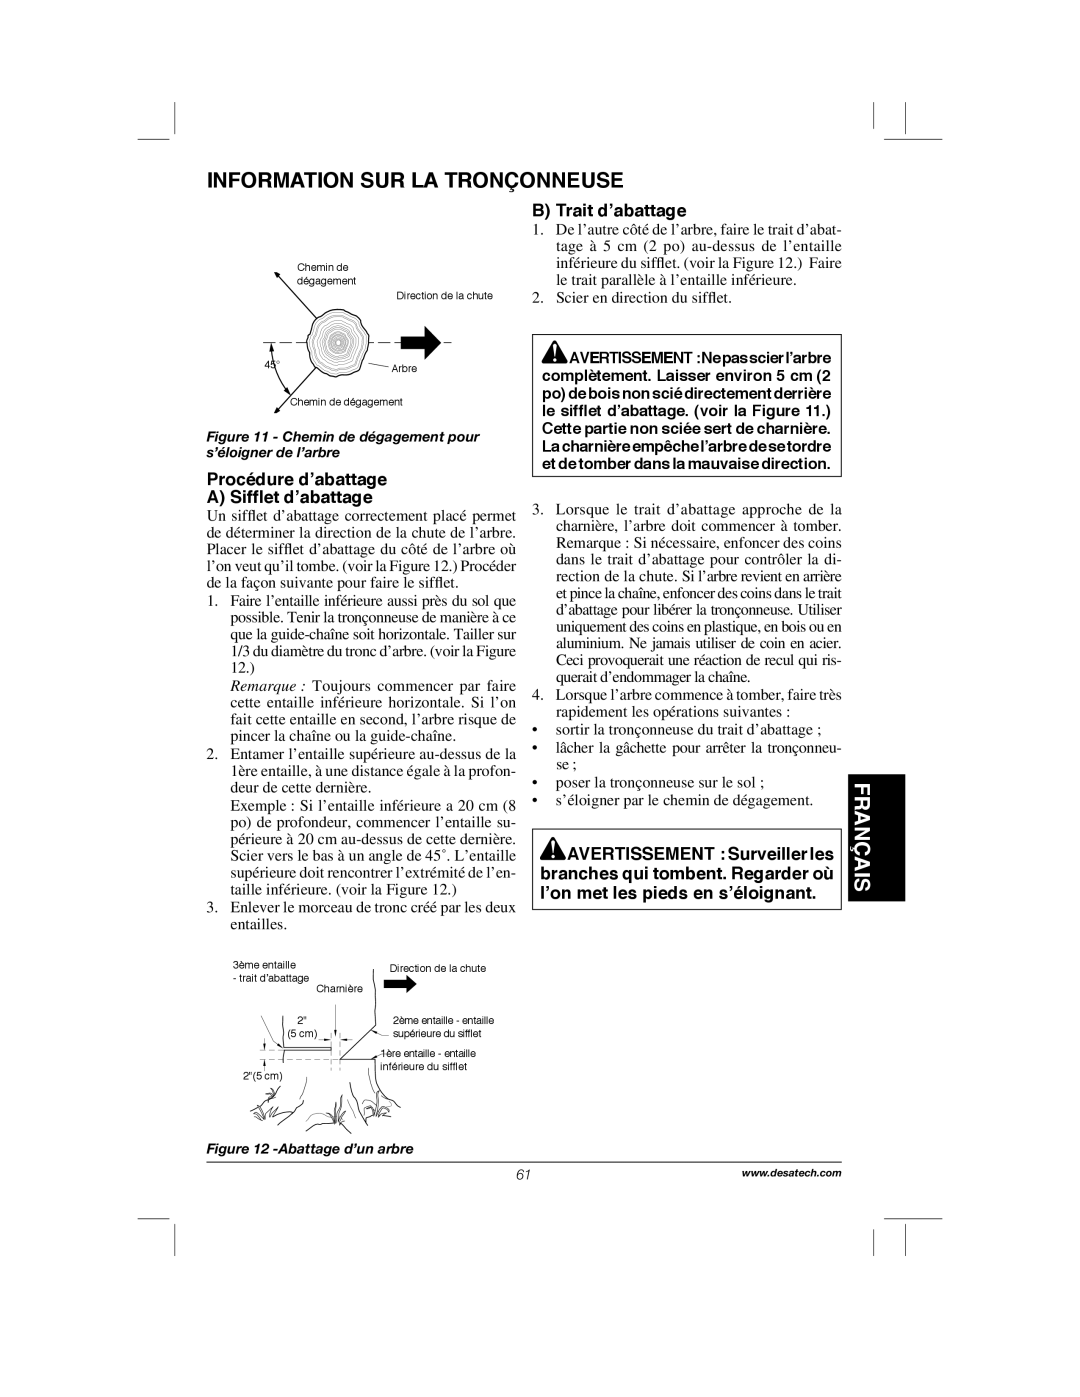 Remington Power Tools 104317, PS1510A Information Sur La Tronçonneuse, Français, Procédure d’abattage A Sifﬂet d’abattage 